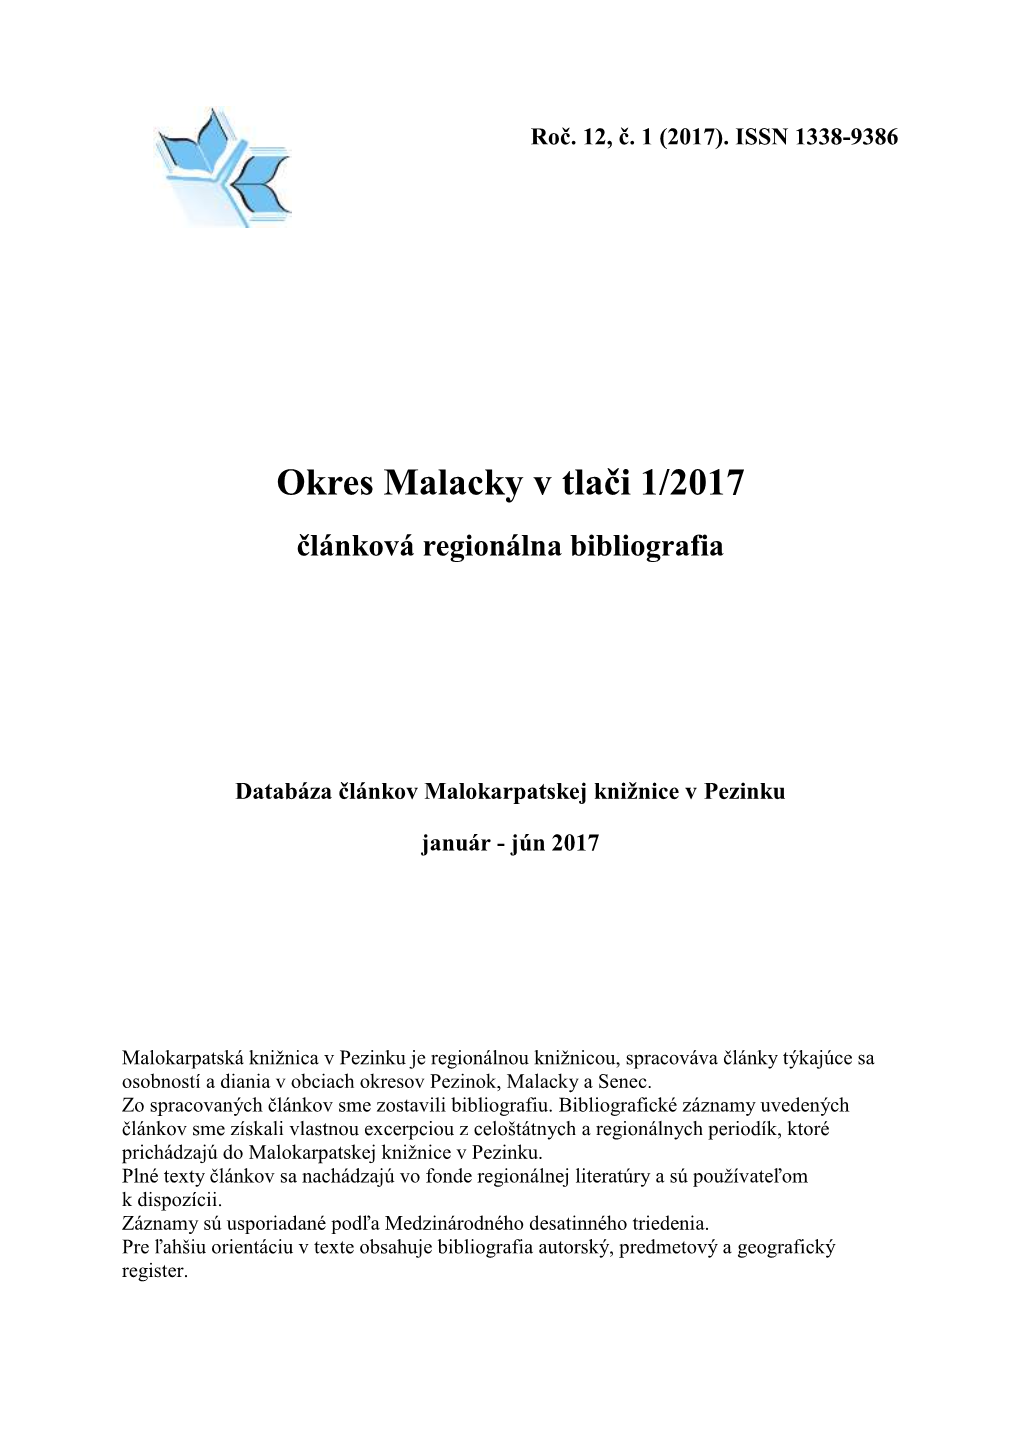 Malacky V Tlači 1/2017 Článková Regionálna Bibliografia